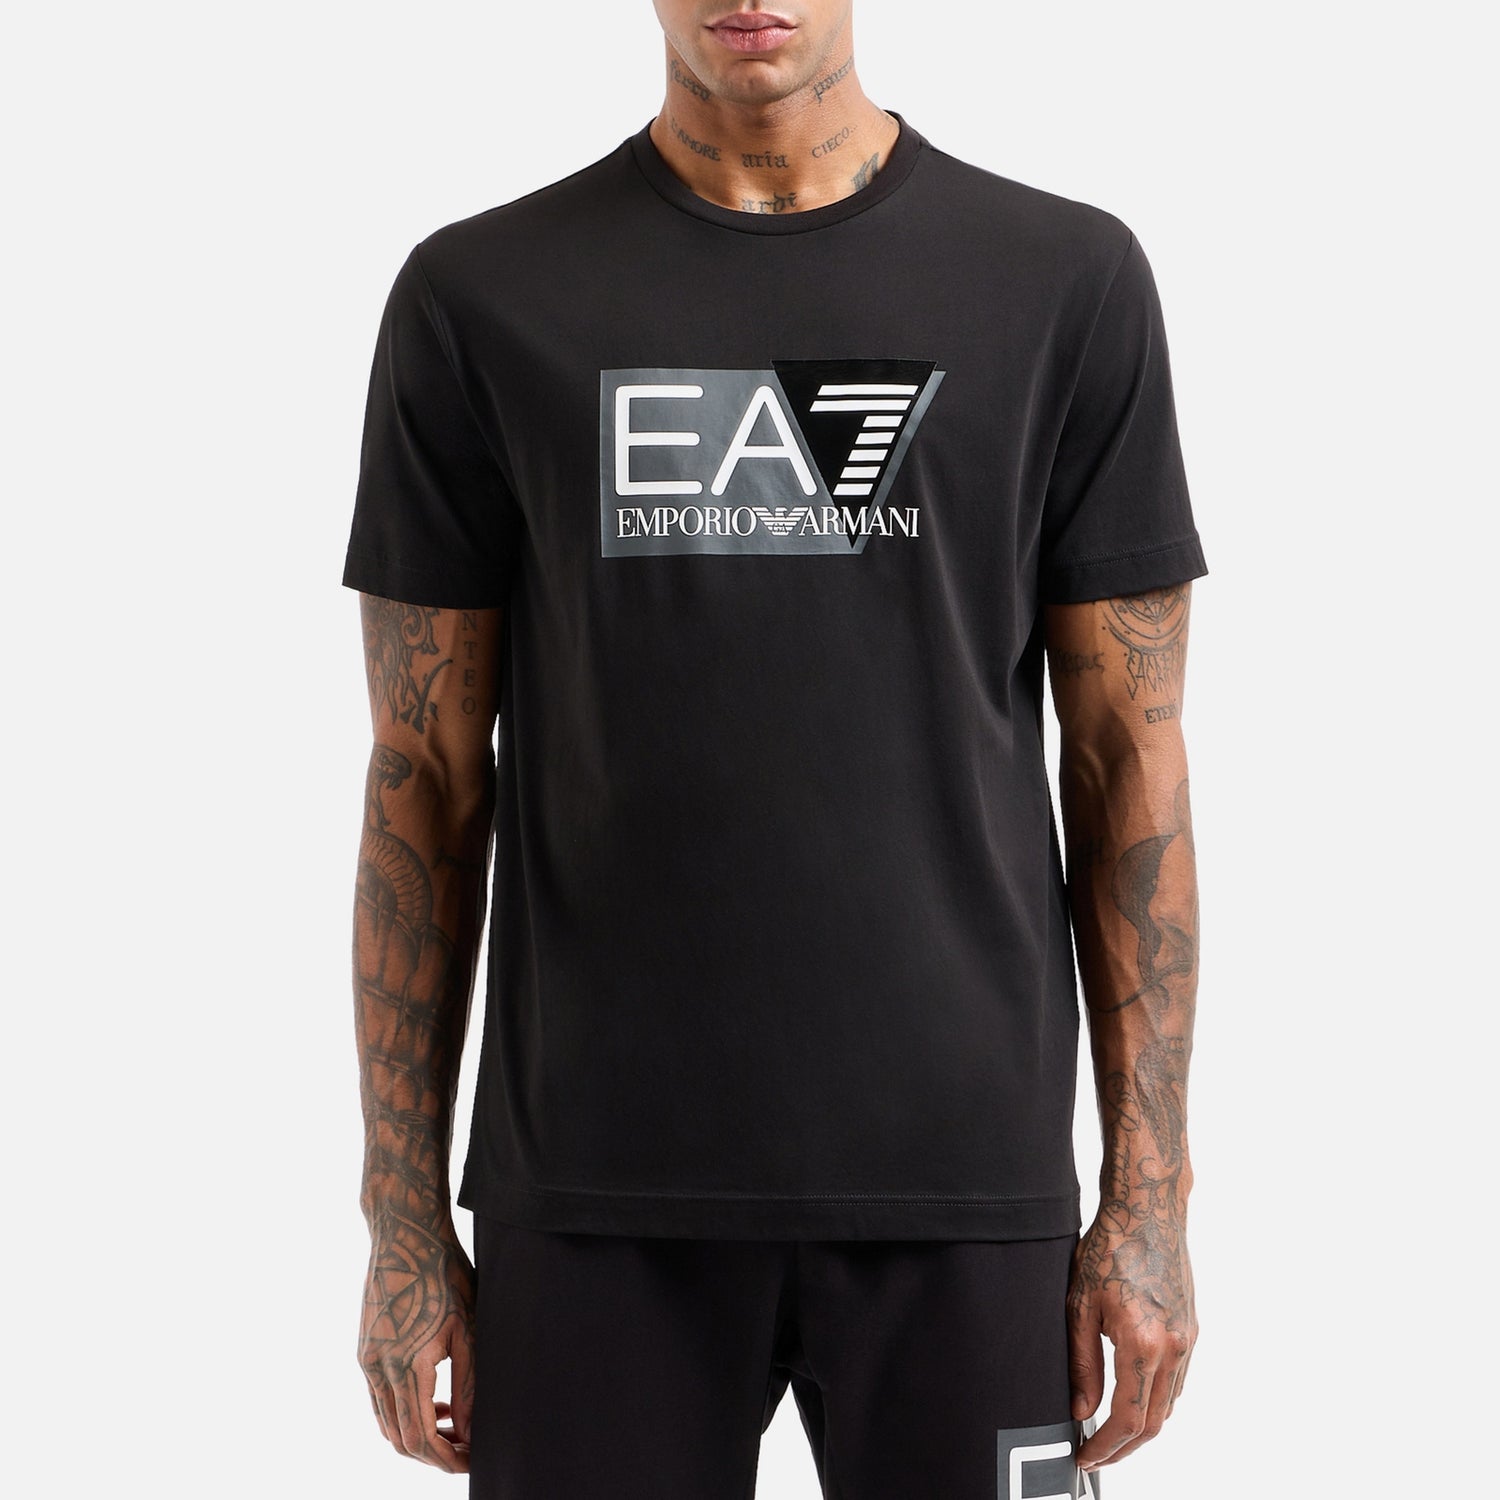 EA7 Pima Visibility Cotton T-Shirt - S